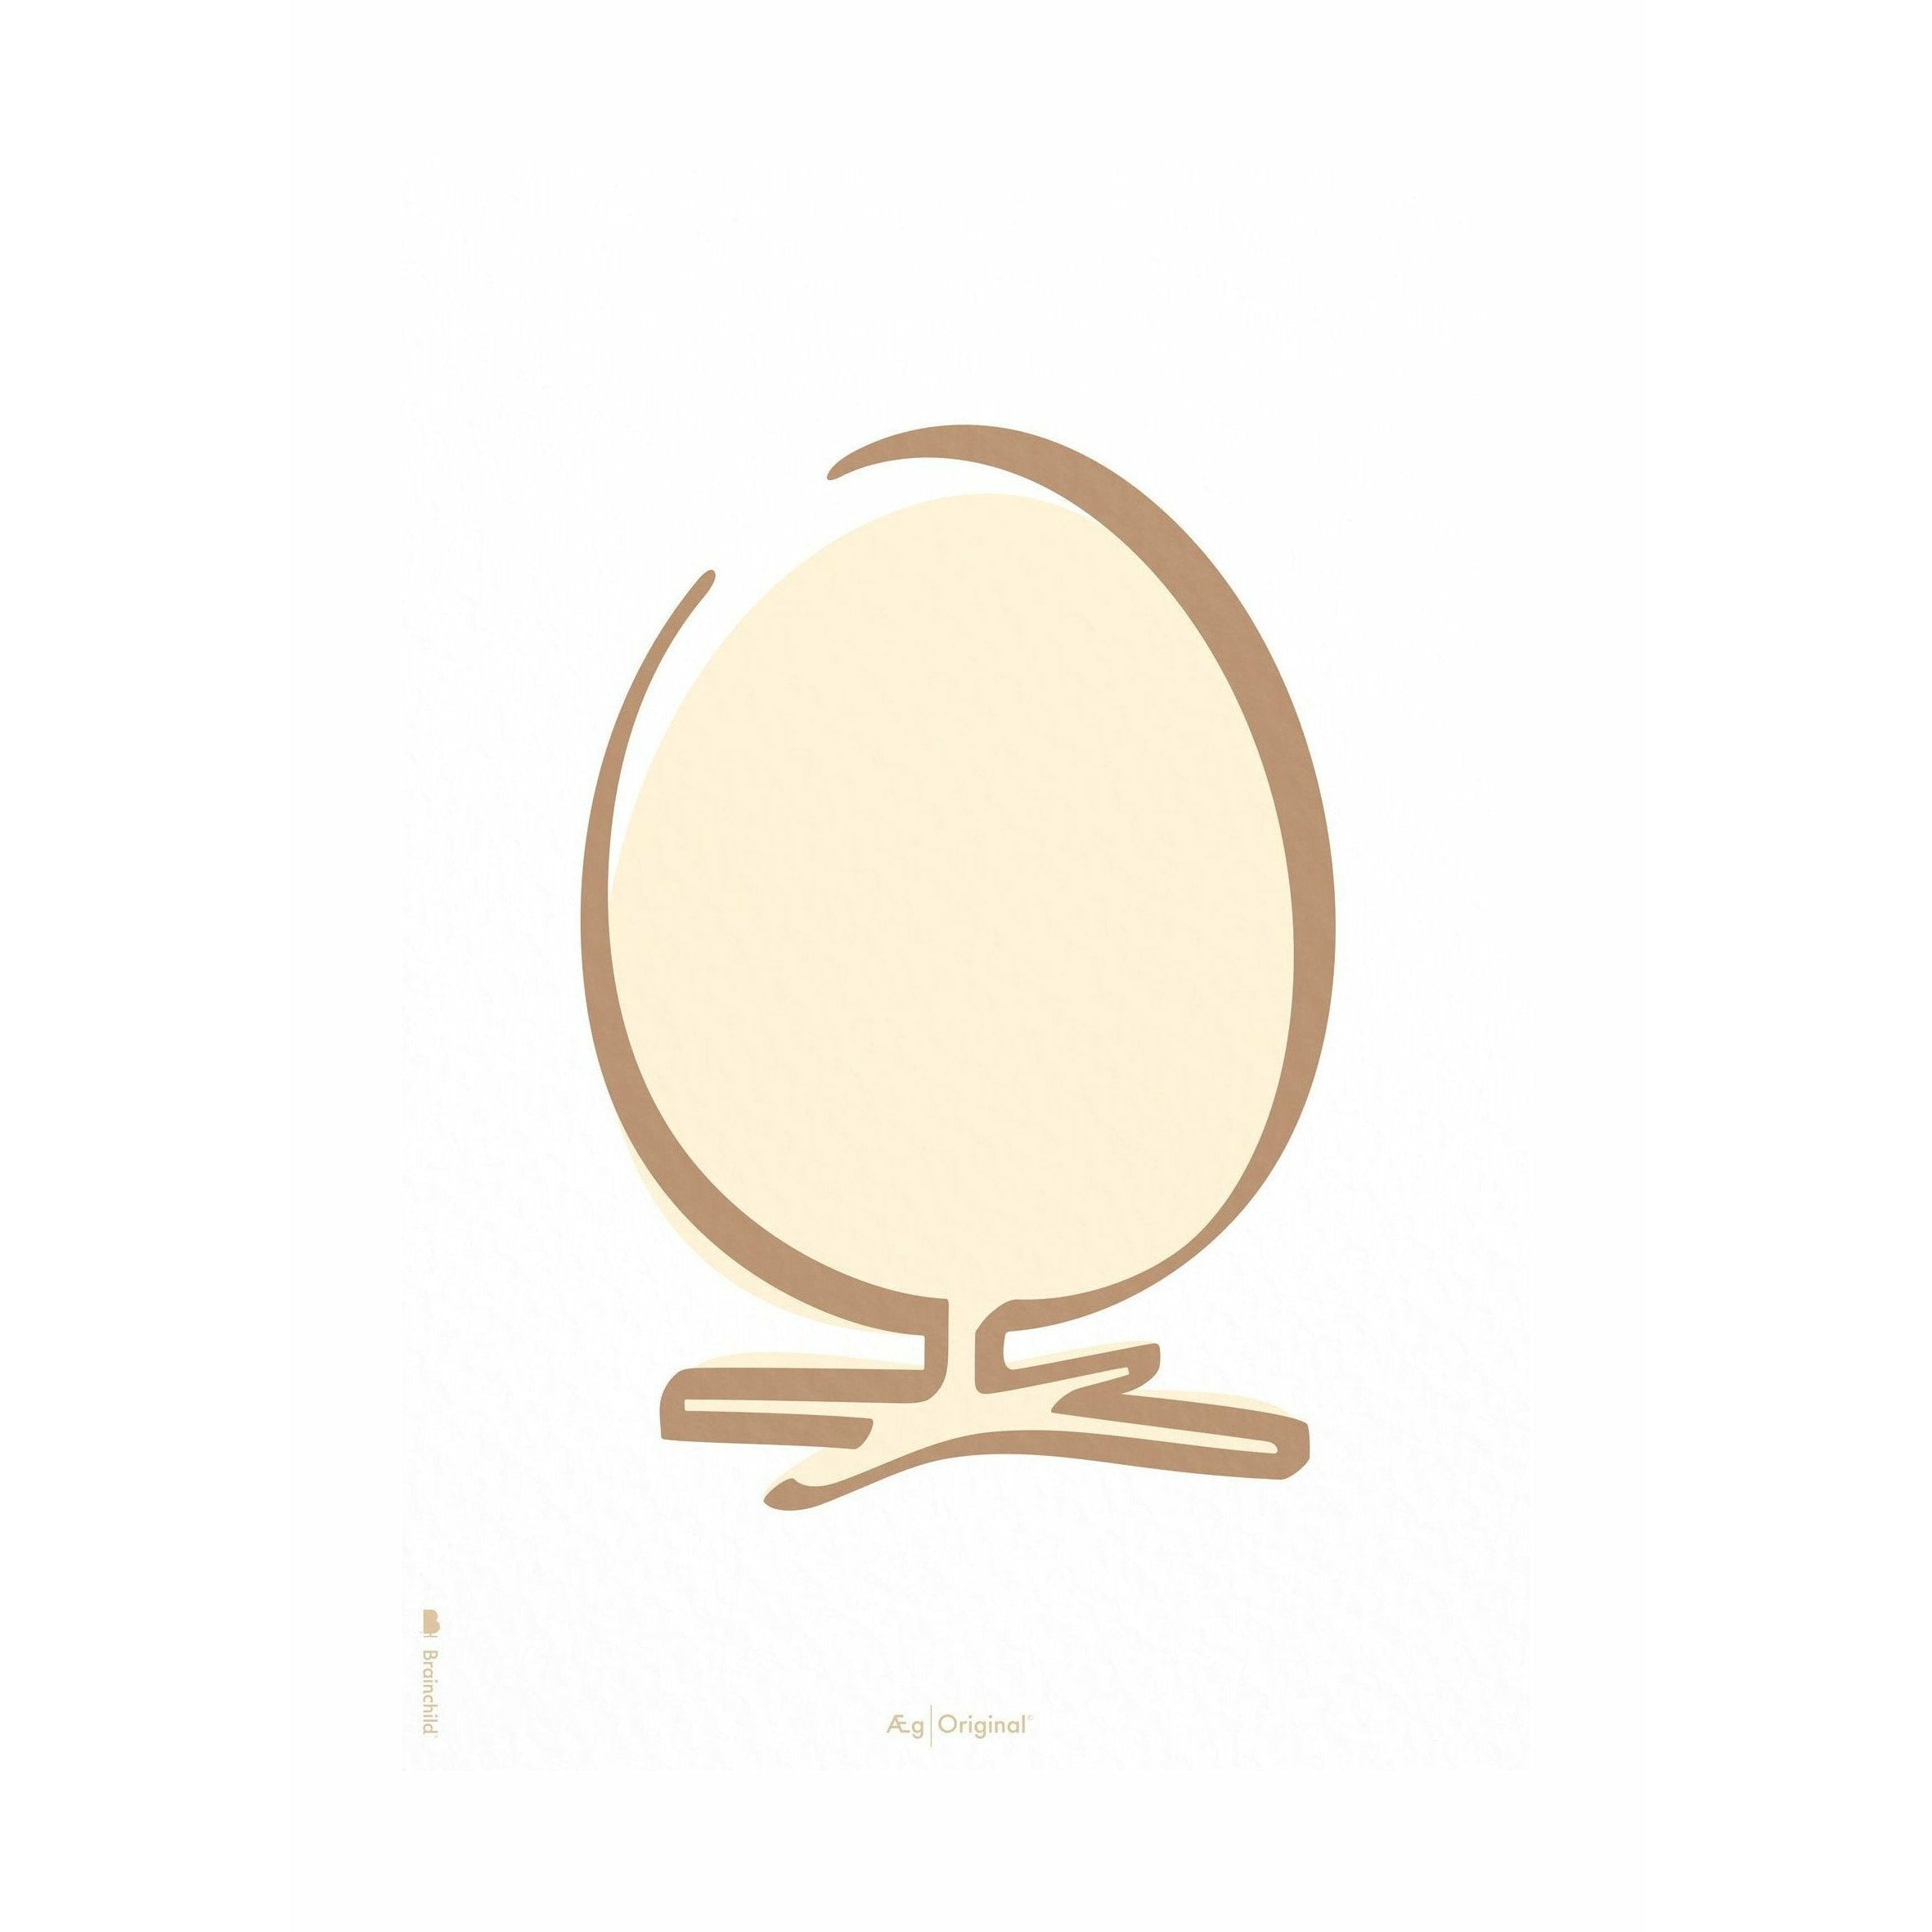 Póster de línea de huevo de precisión sin marco 30x40 cm, fondo blanco